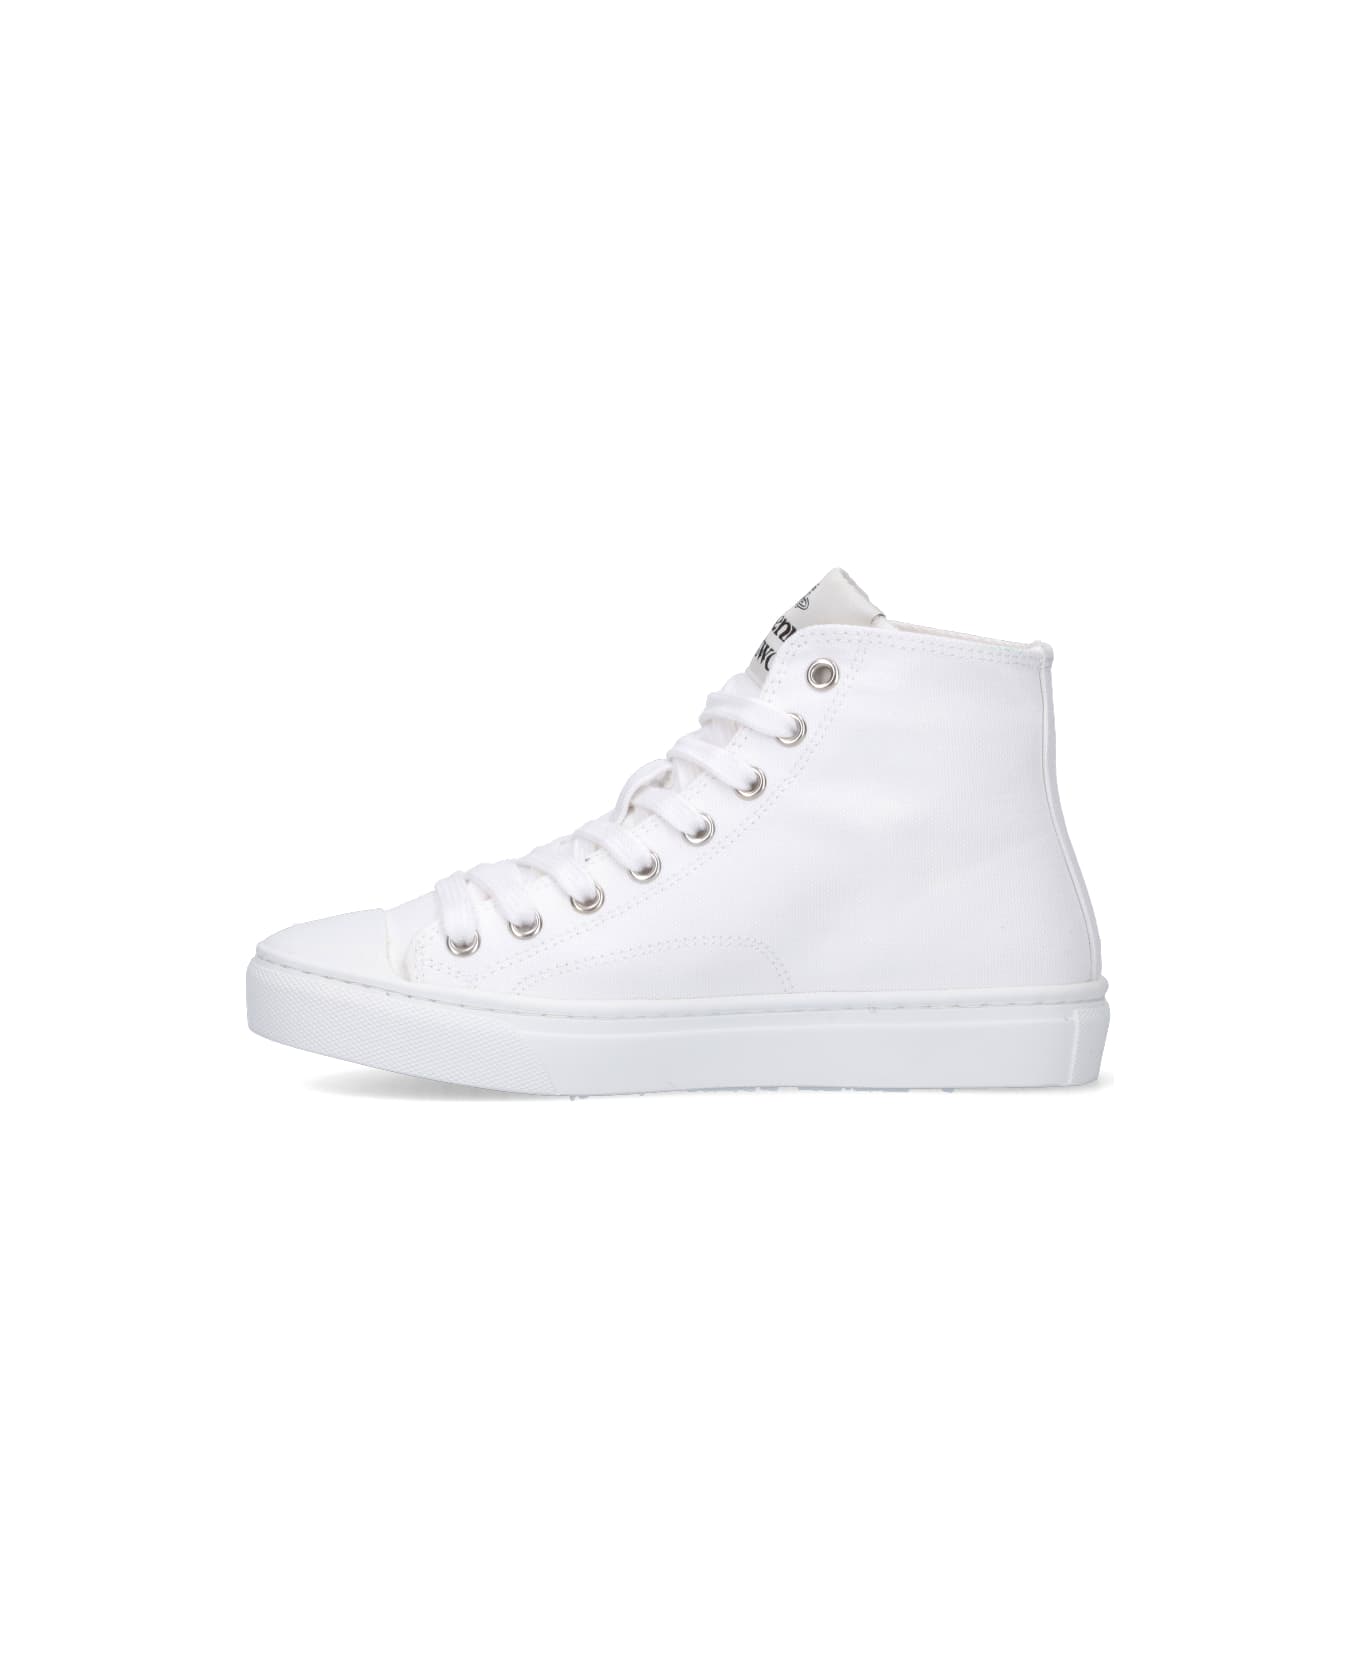 Vivienne Westwood 'orb' High-top Sneakers - White